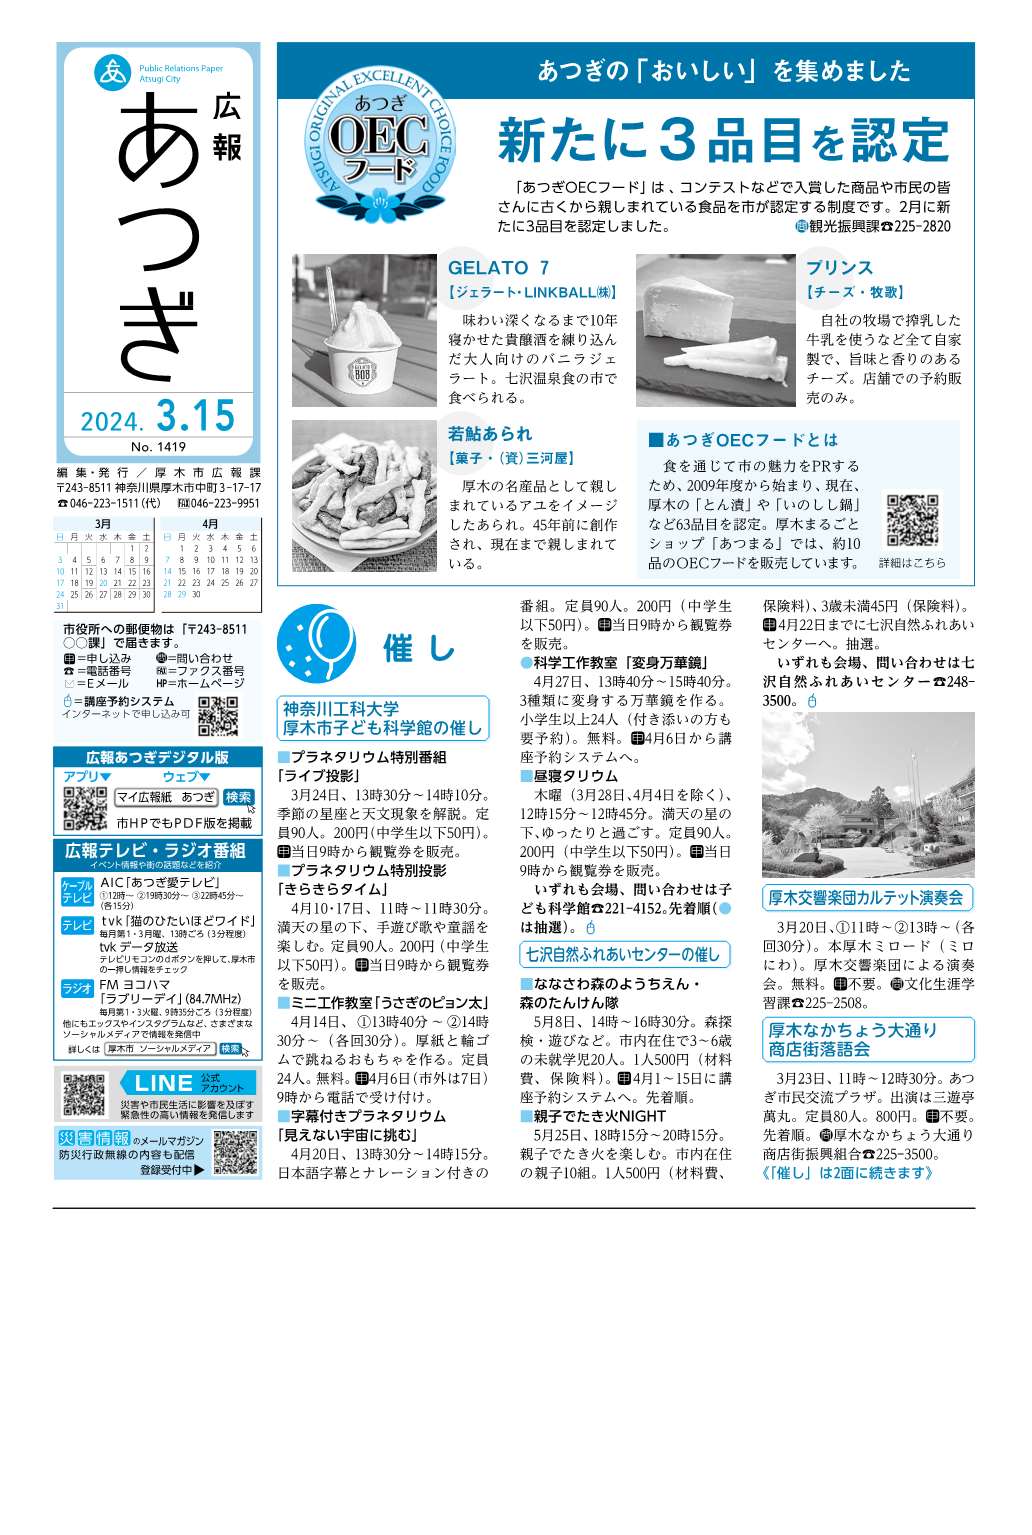 広報あつぎ3月15日号の1面のイメージ画像